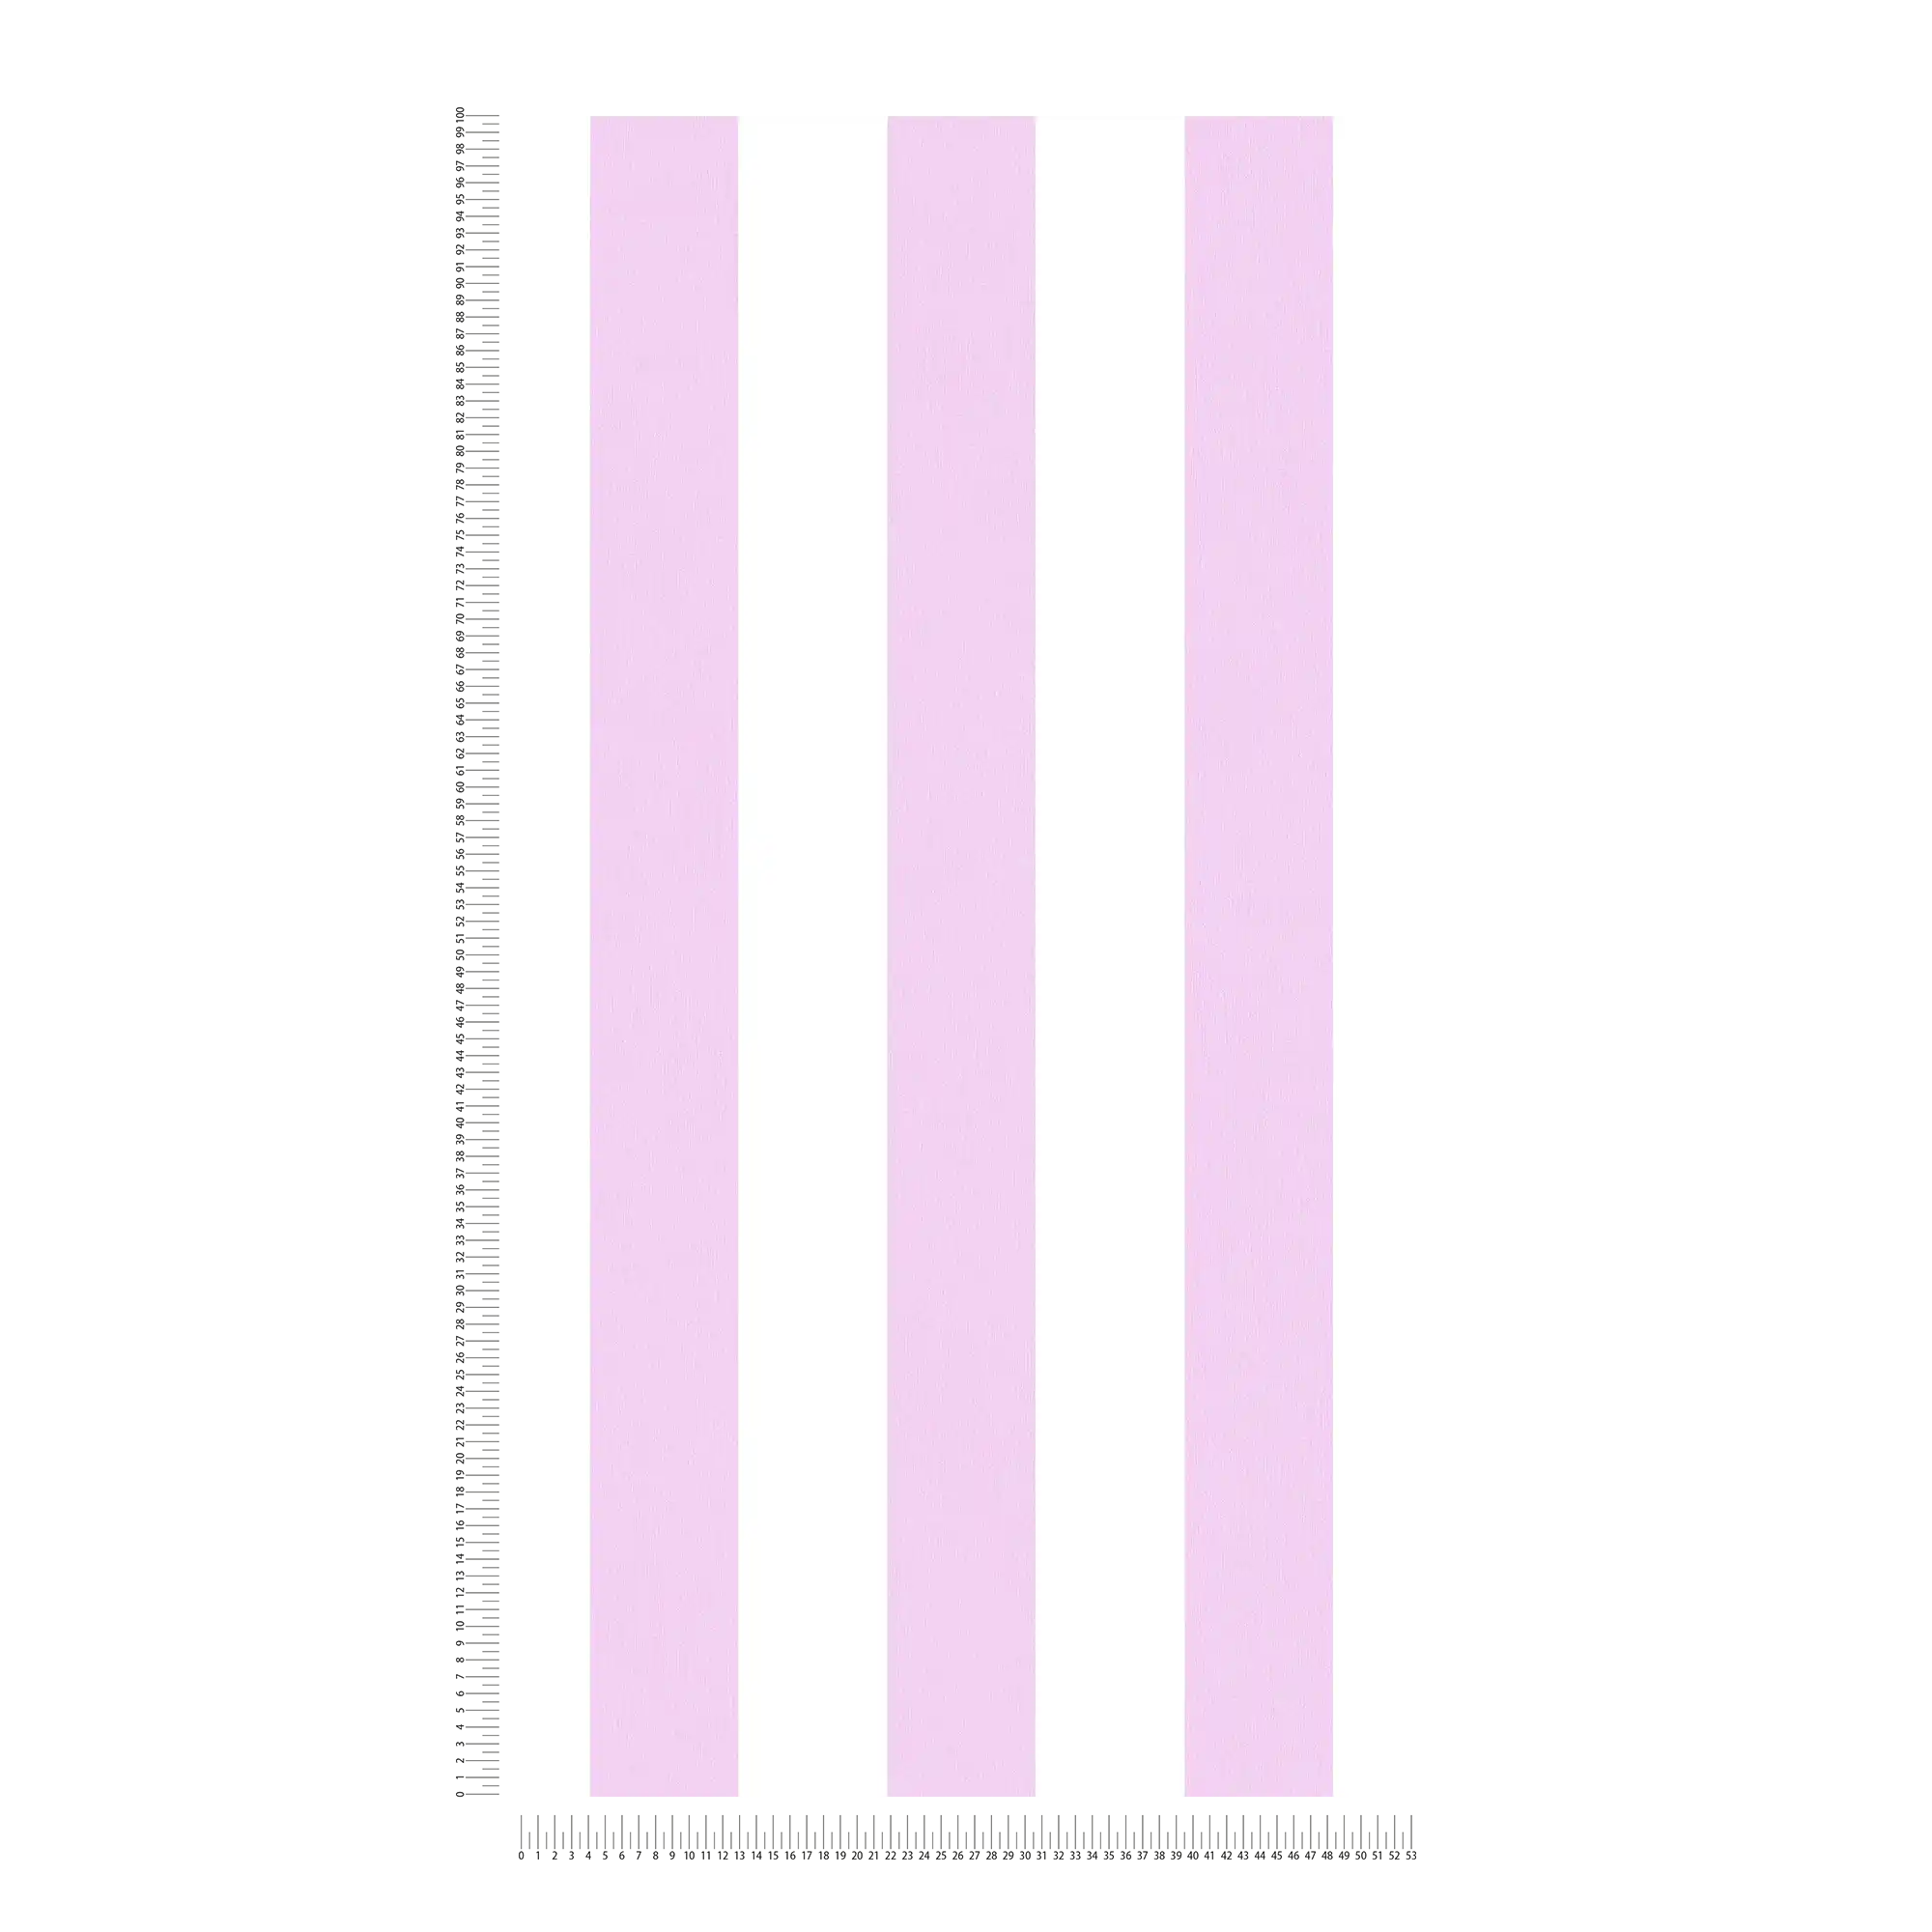             Wallpaper nursery girl vertical stripes - pink, white
        